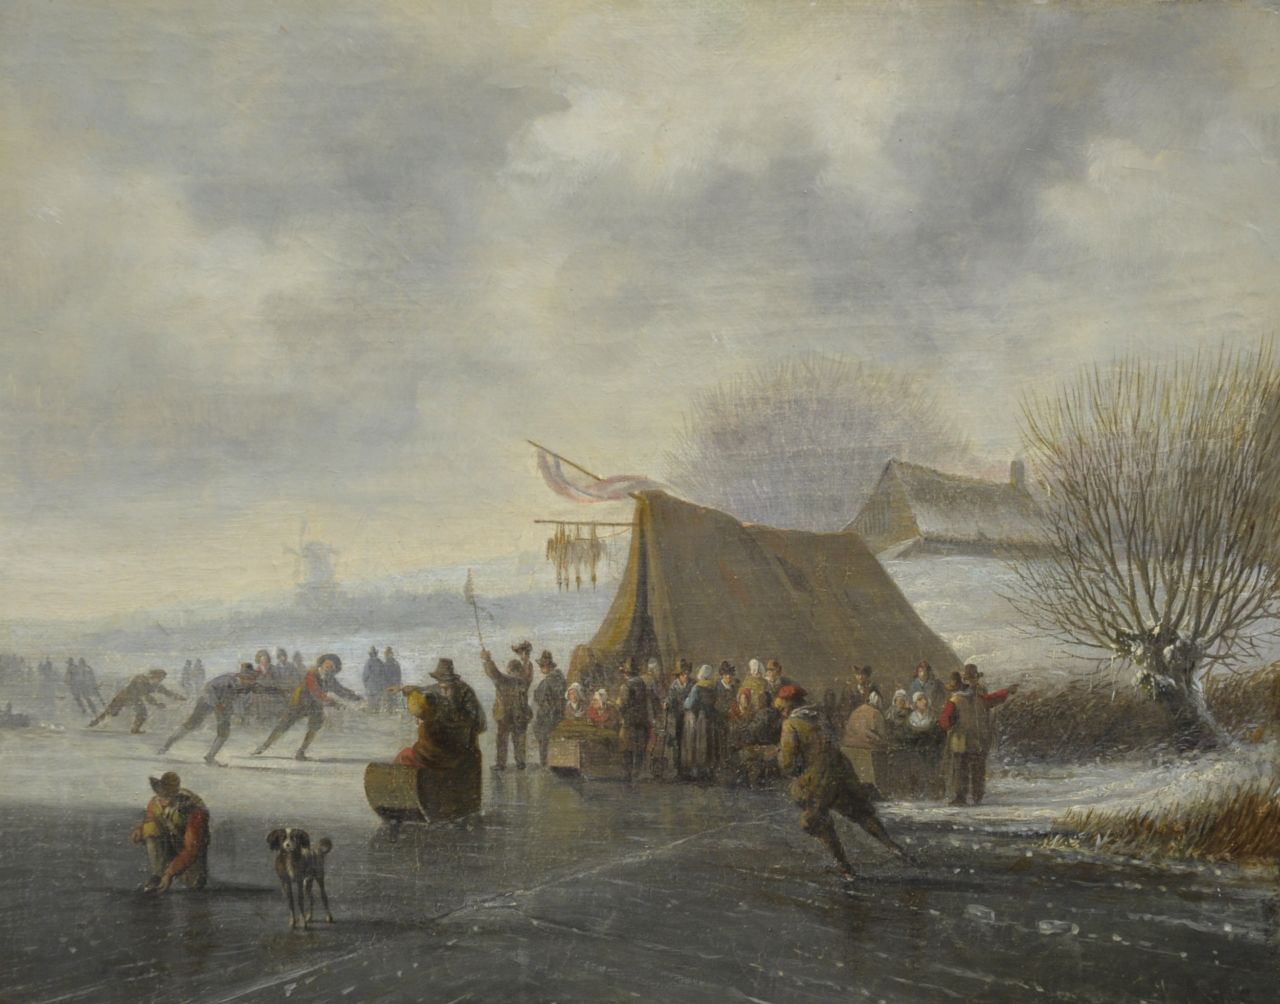 Stok J. van der | Jacobus van der Stok, De schaatswedstrijd, olieverf op doek 27,0 x 34,0 cm, gesigneerd rechtsonder